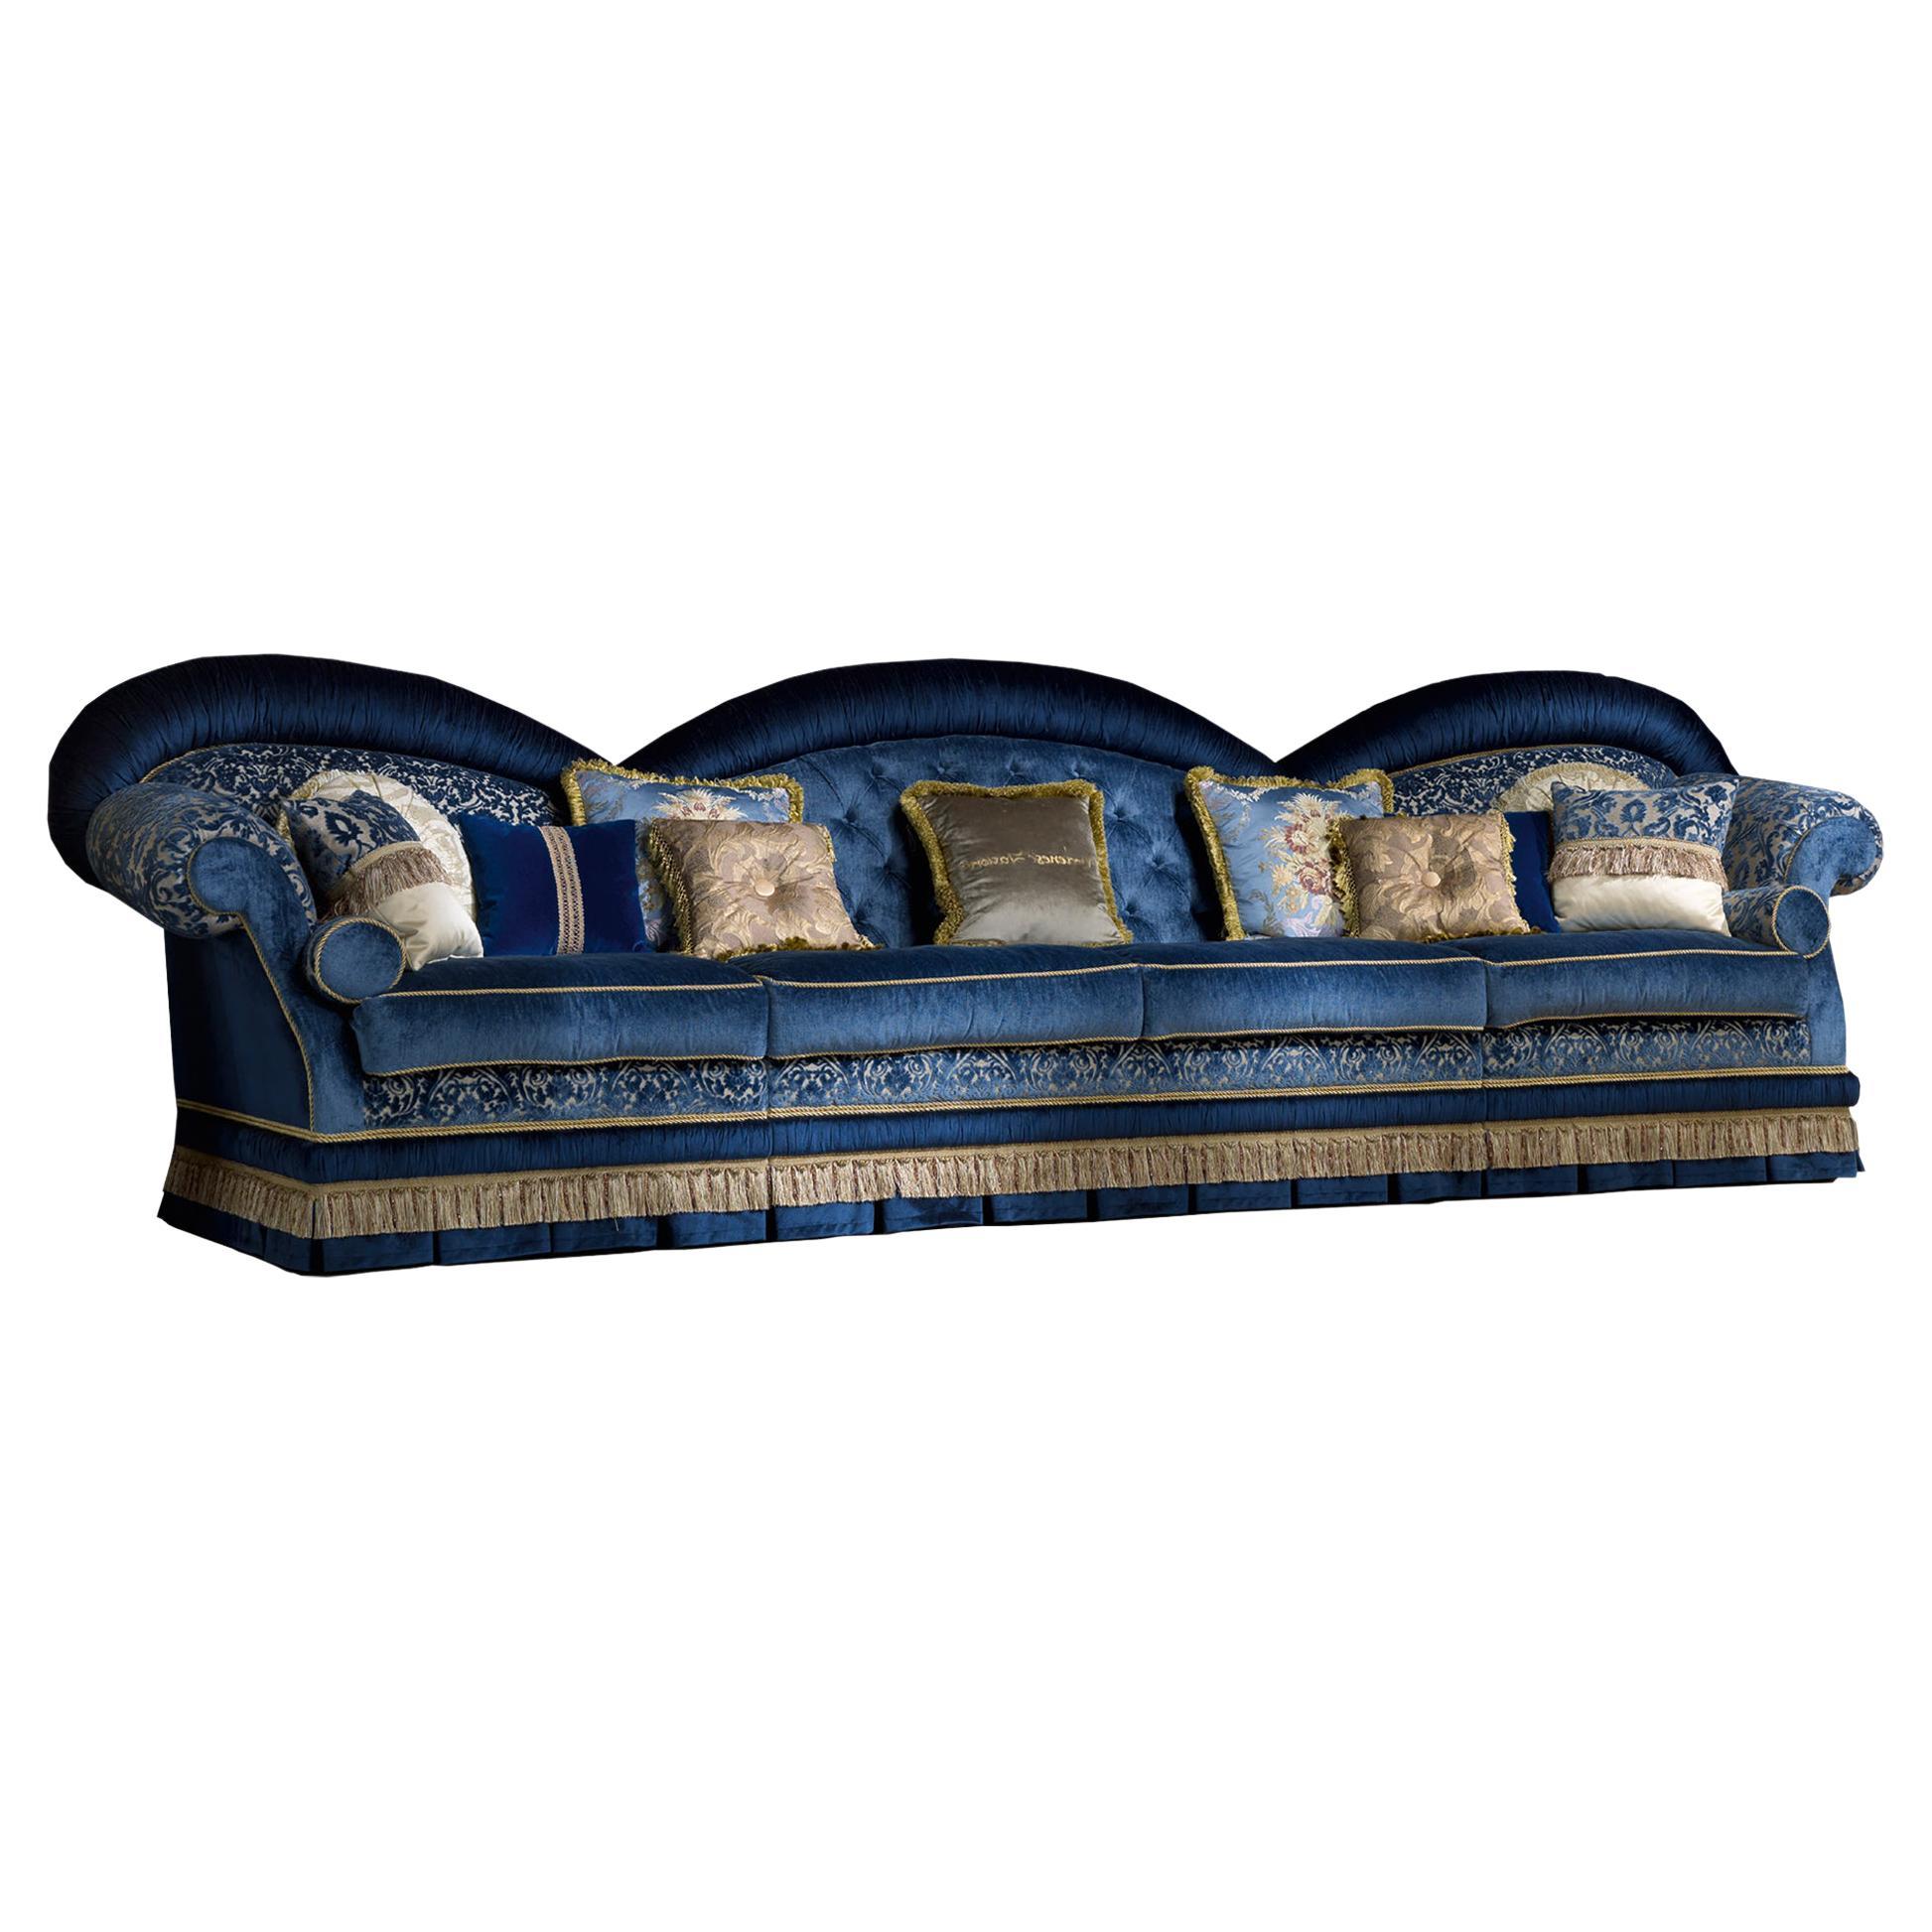 Canapé bleu royal en bois massif exclusif et capitonné de velours bleu en vente